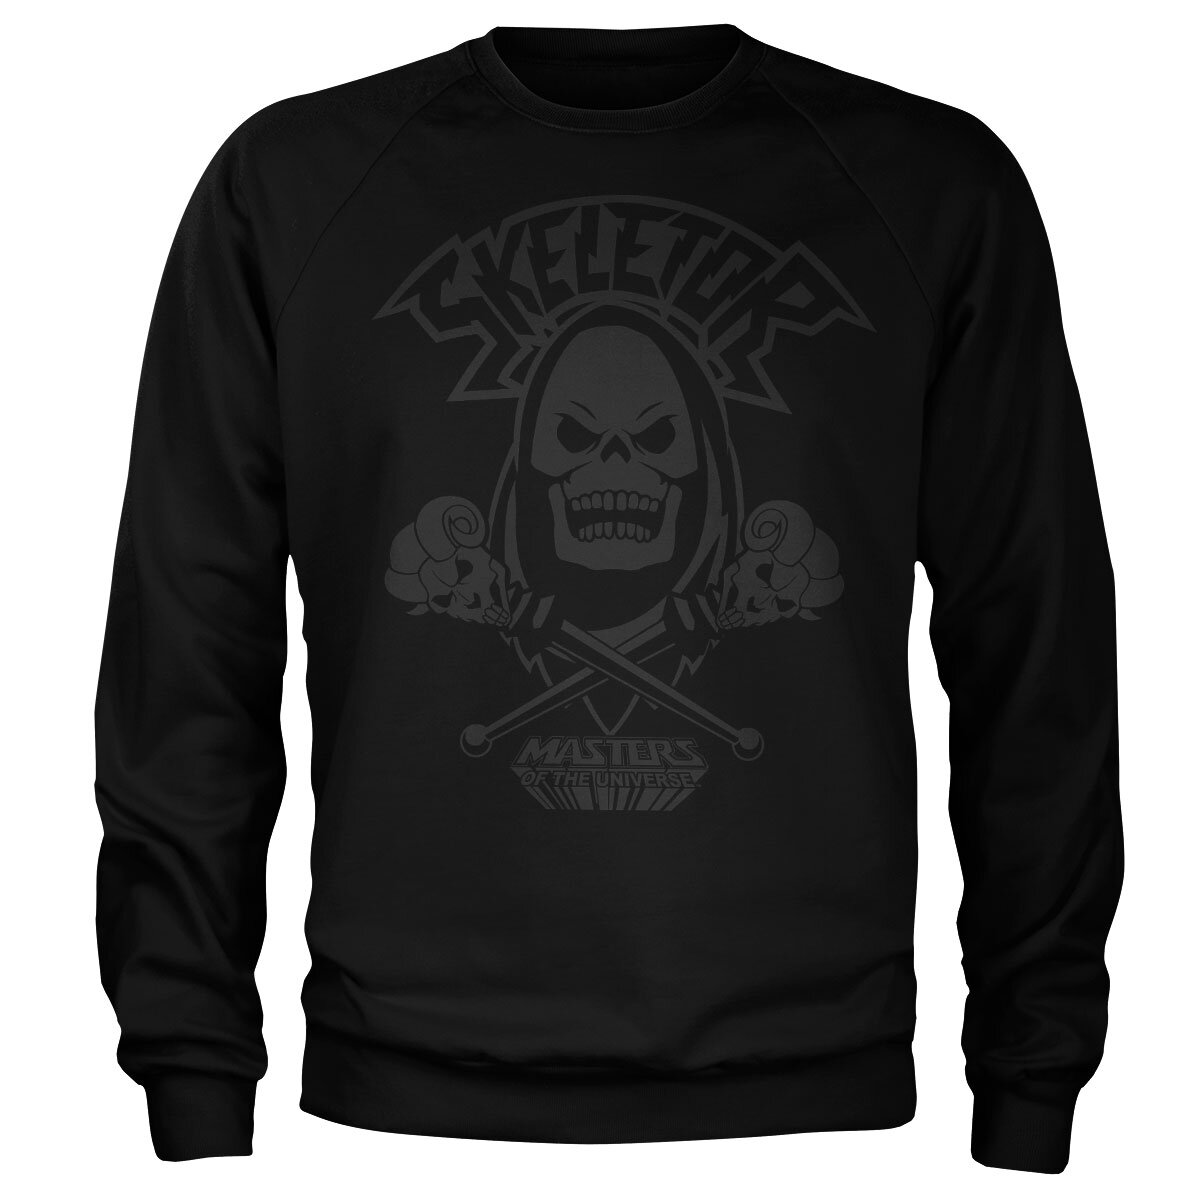 Skeletor Black On Black Sweatshirt